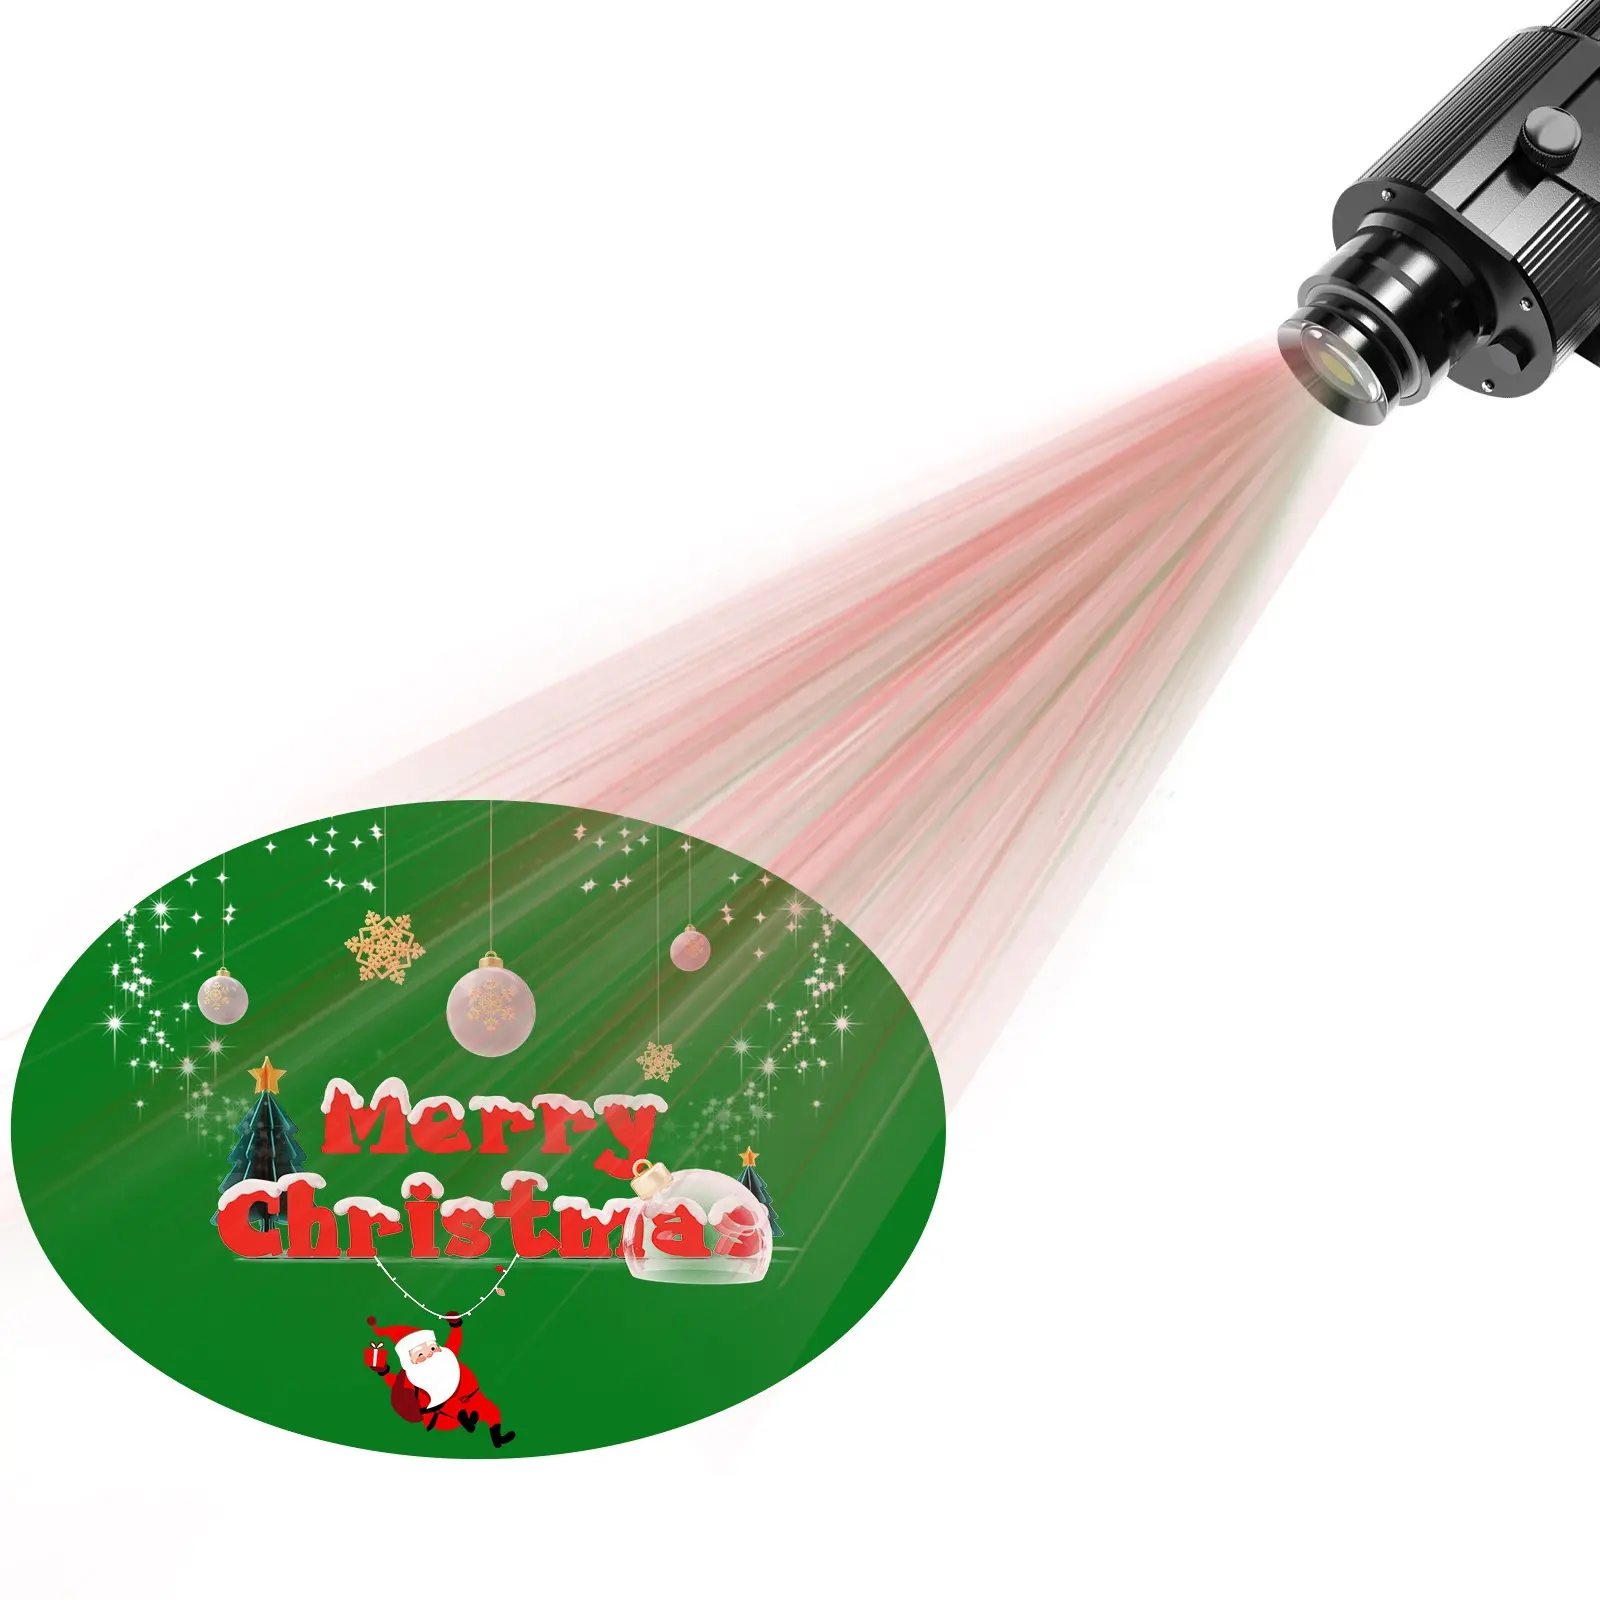 Tmut Máy chiếu laser logo siêu độ nét cao đèn máy chiếu trung tâm mua sắm dừng chiếu sáng logo nhỏ